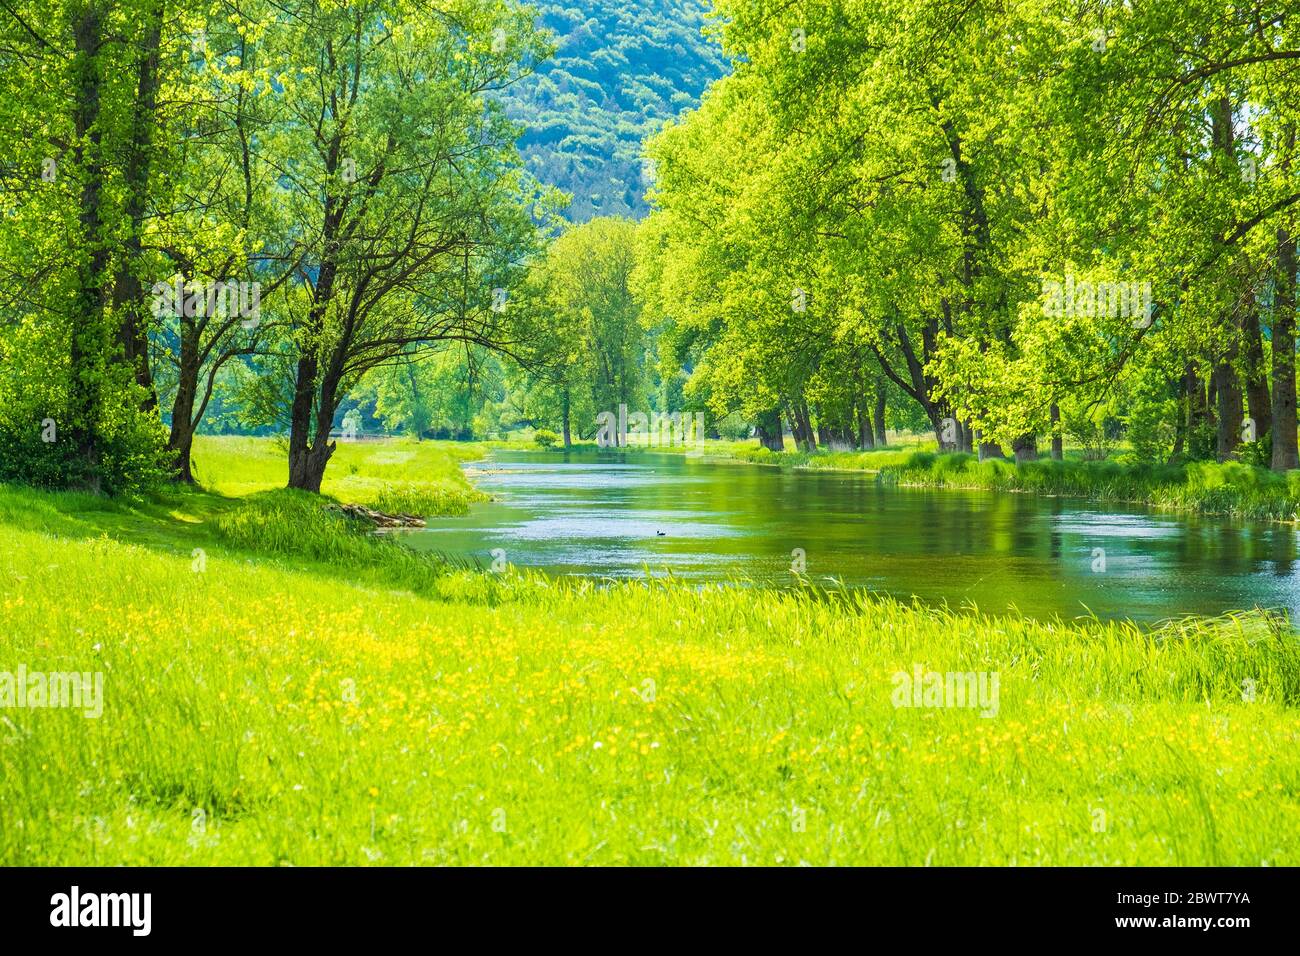 Beautiful green landscape, river Gacka flowing between the meadow fields in Lika region of Croatia Stock Photo